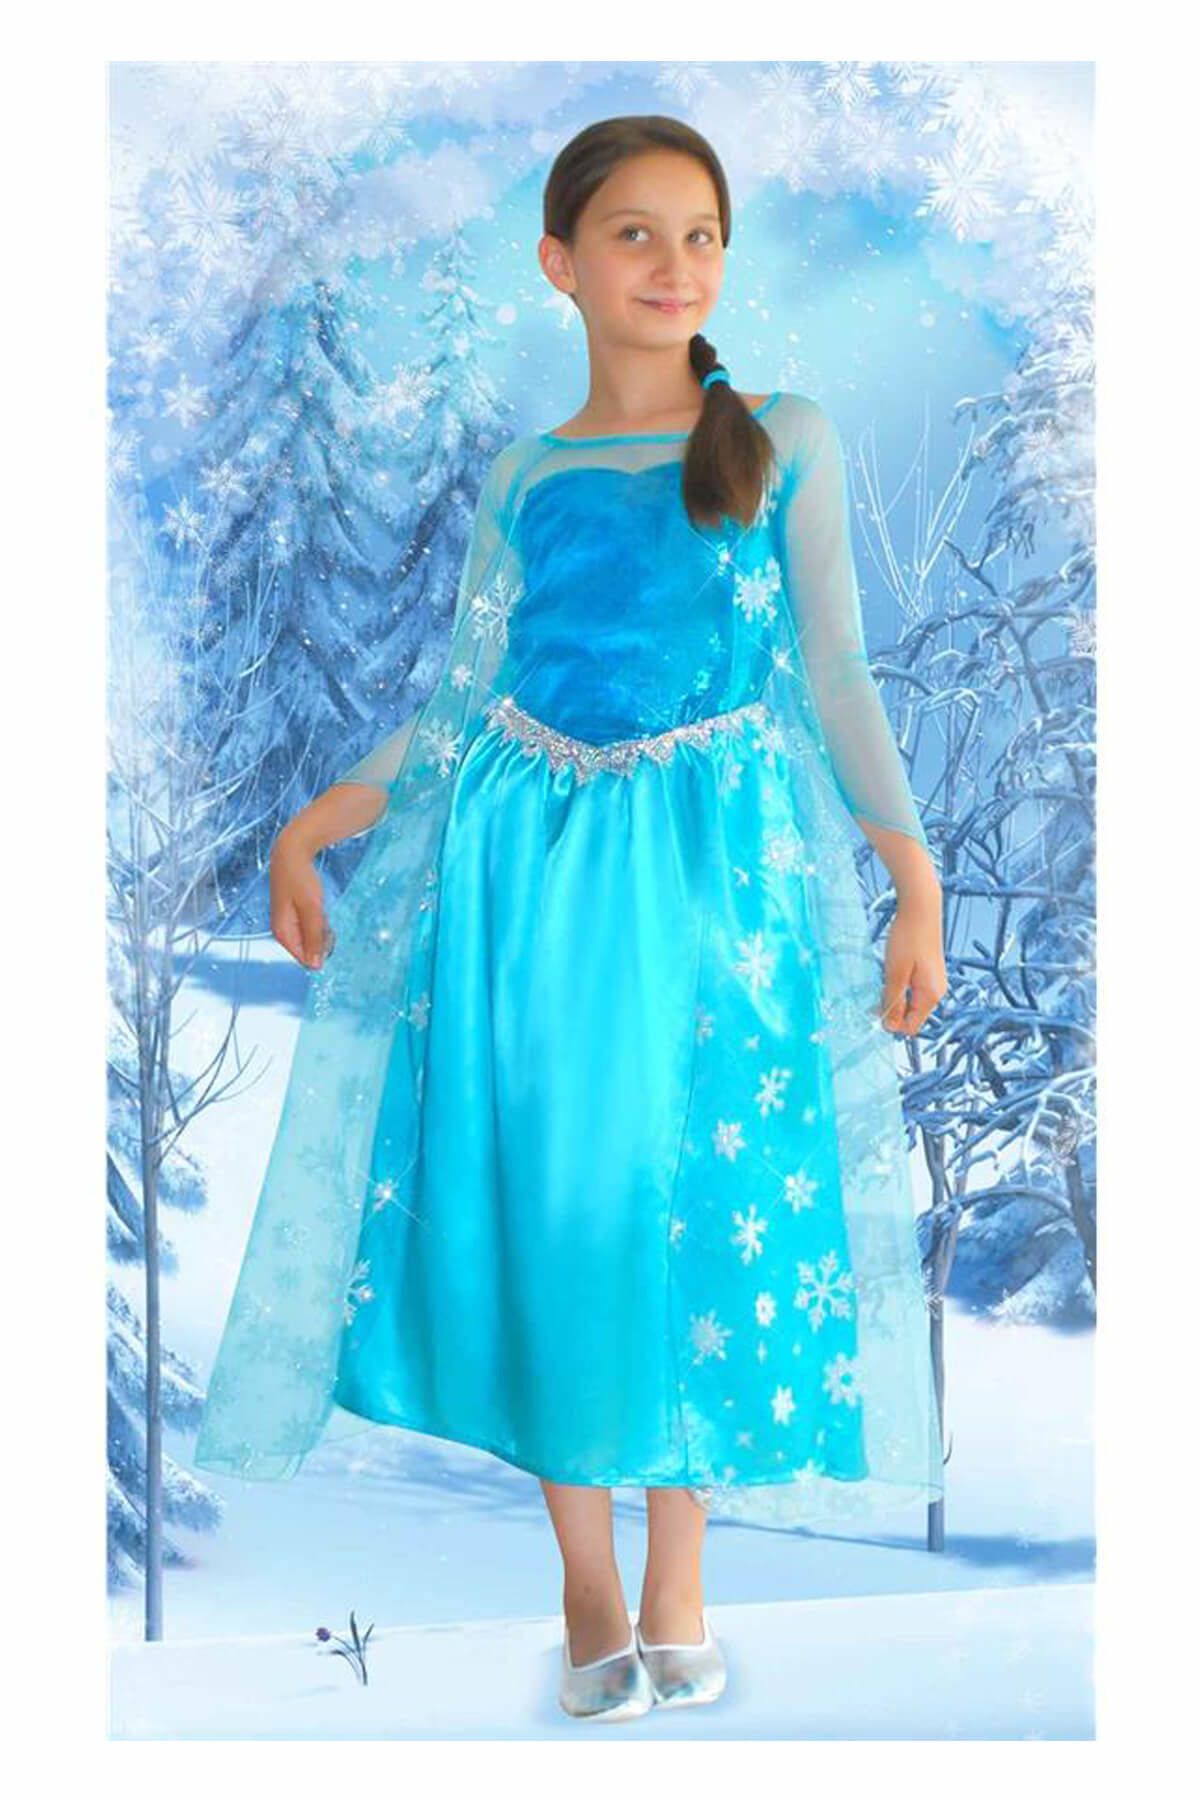 Karlar Ülkesi Frozen Elsa Çocuk Kostüm 4-6 Yaş